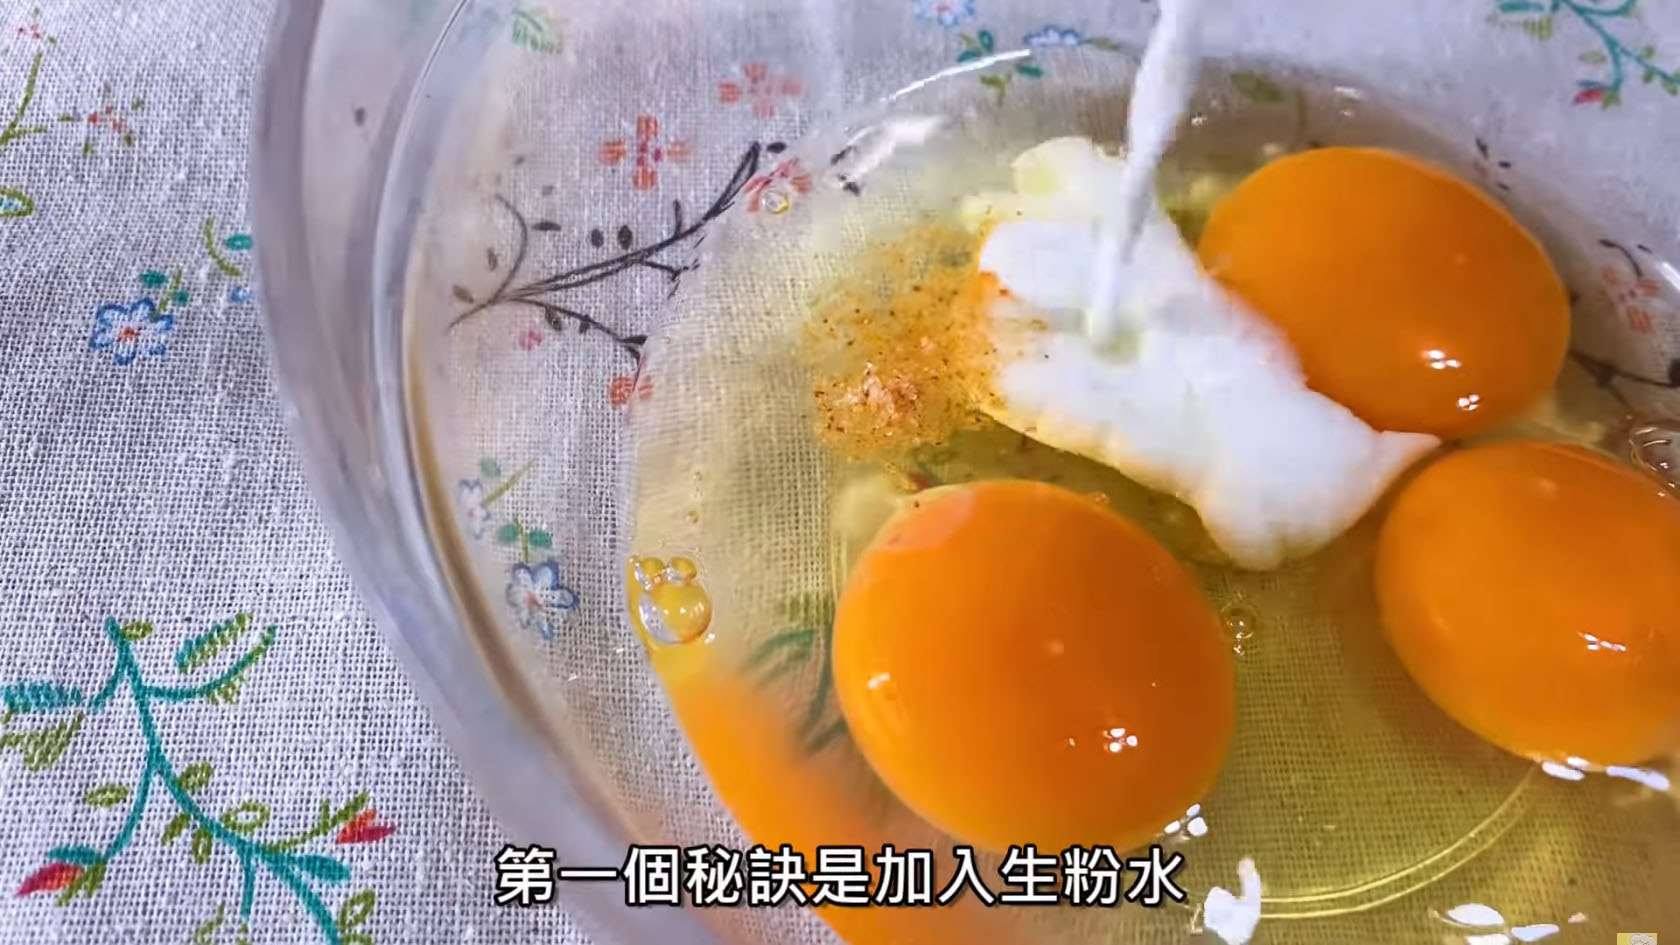 韭黃炒蛋